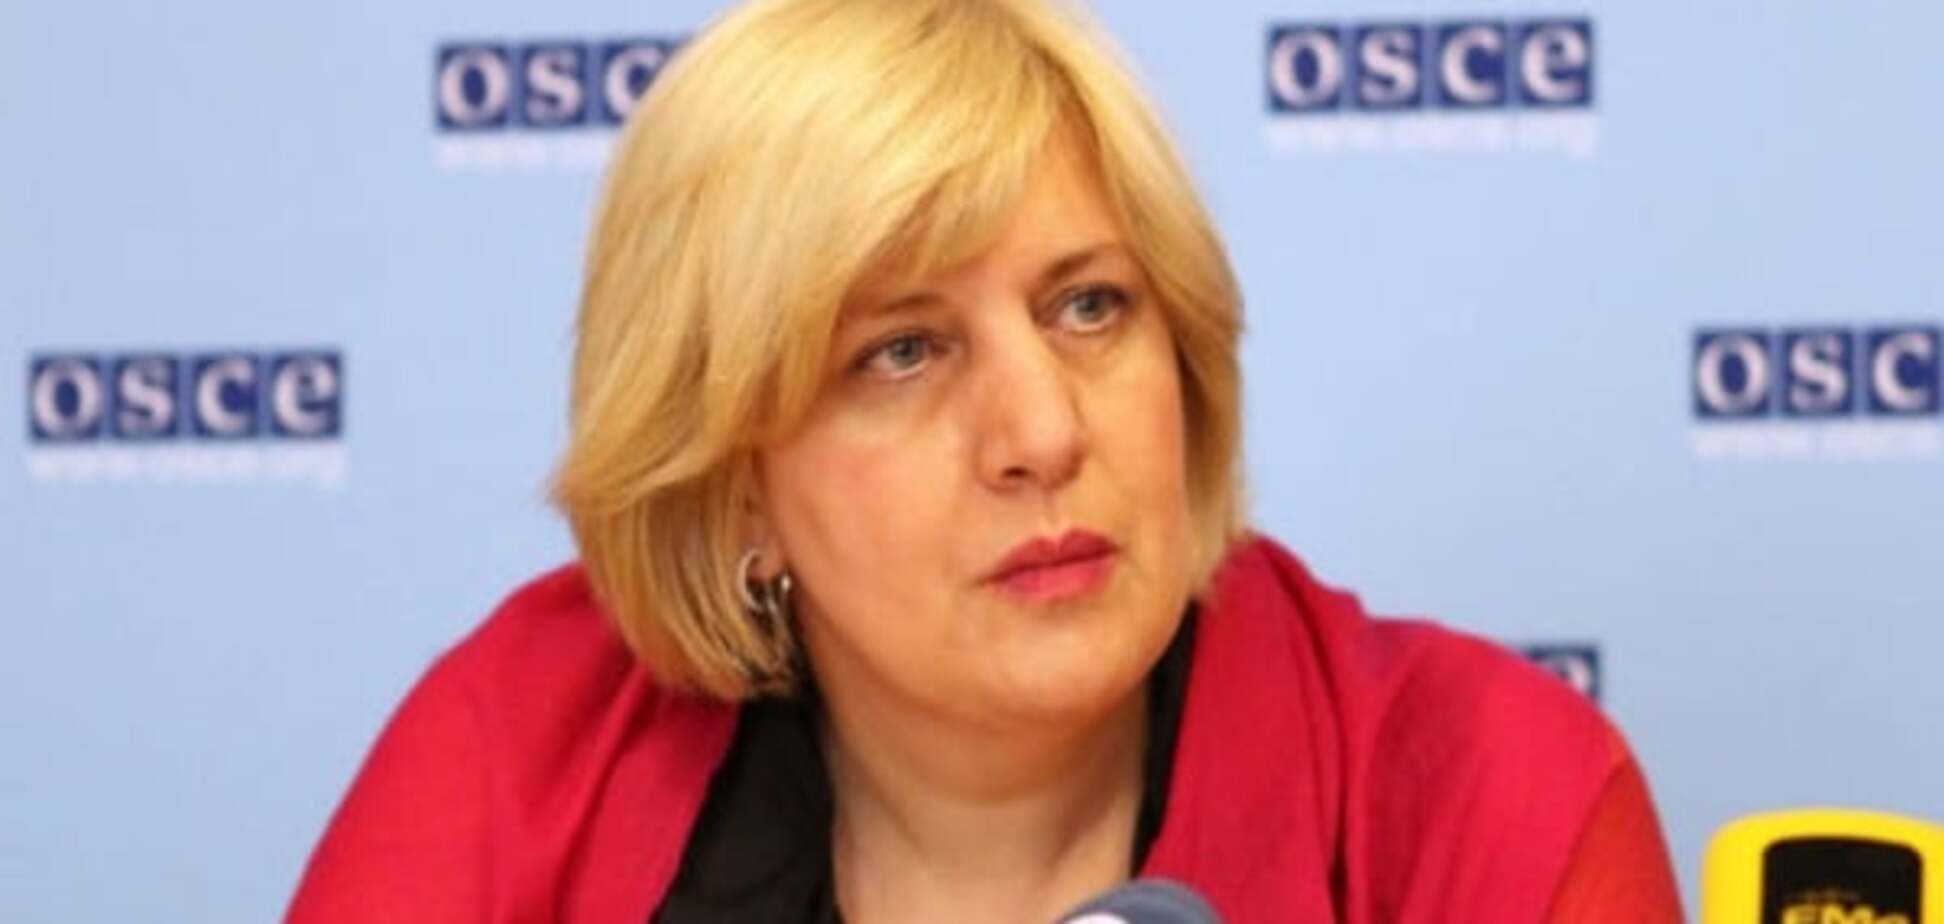 Насилие — не ответ: в ОБСЕ осудили инцидент вокруг 'Интера'